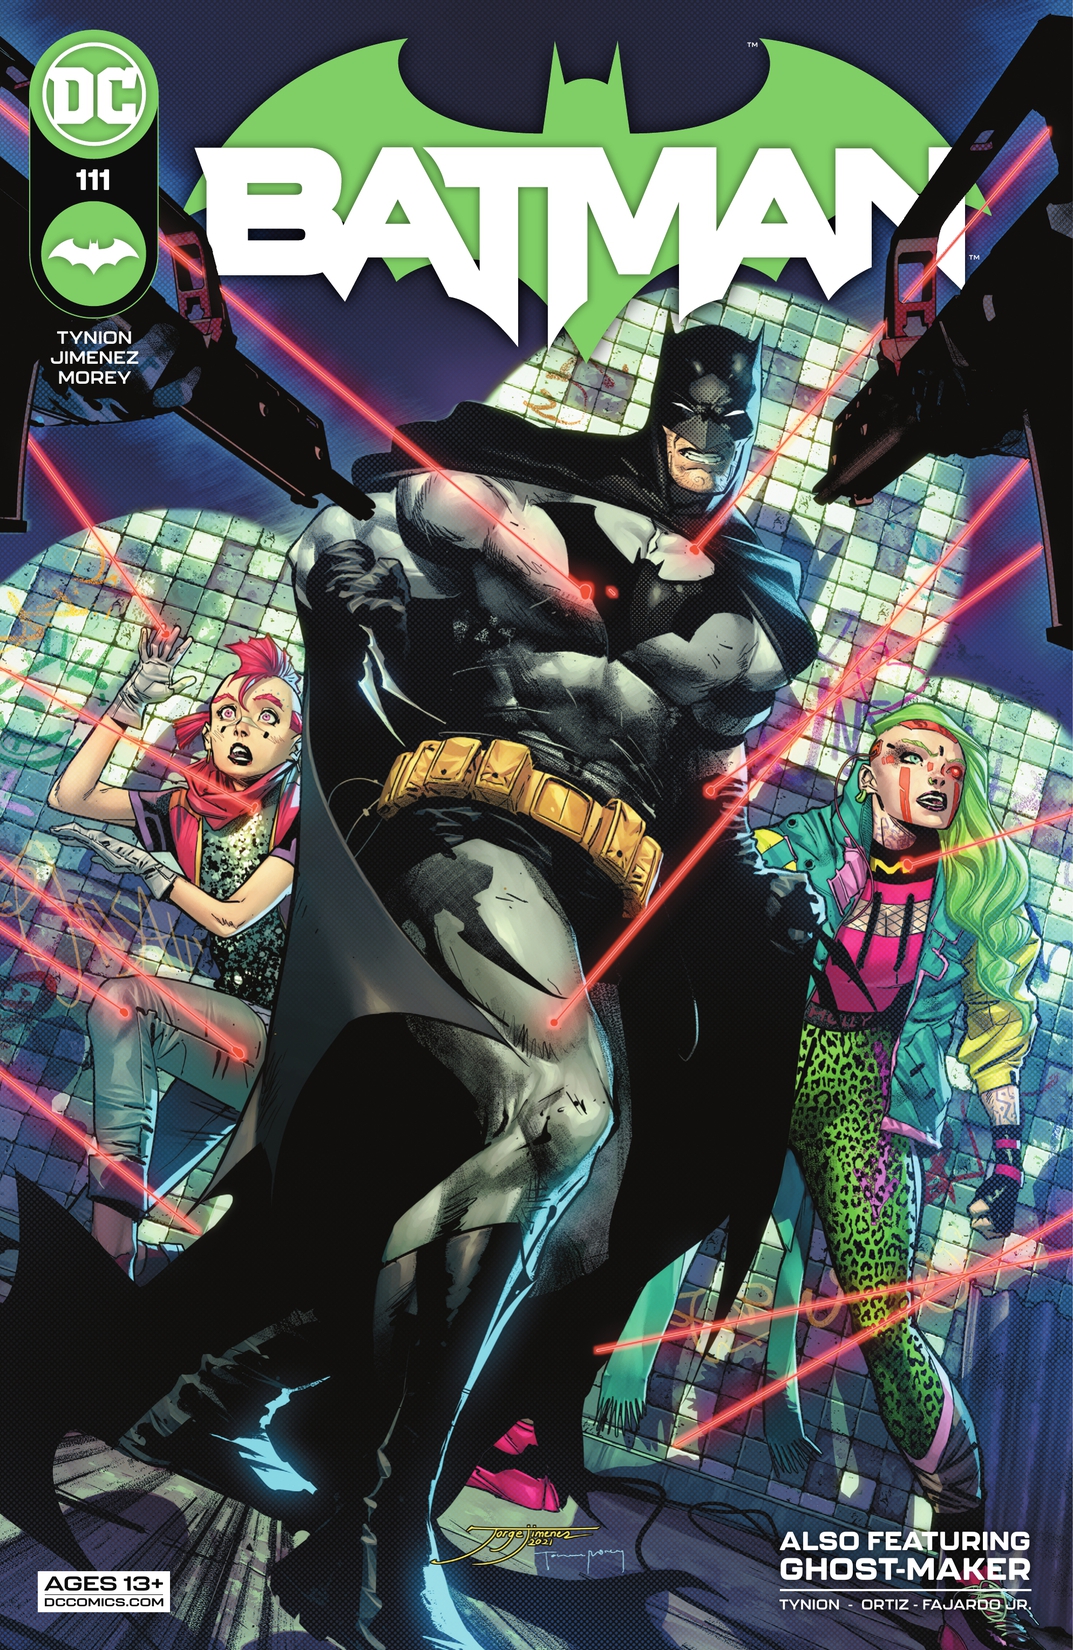 Batman (2016-) #111 preview images